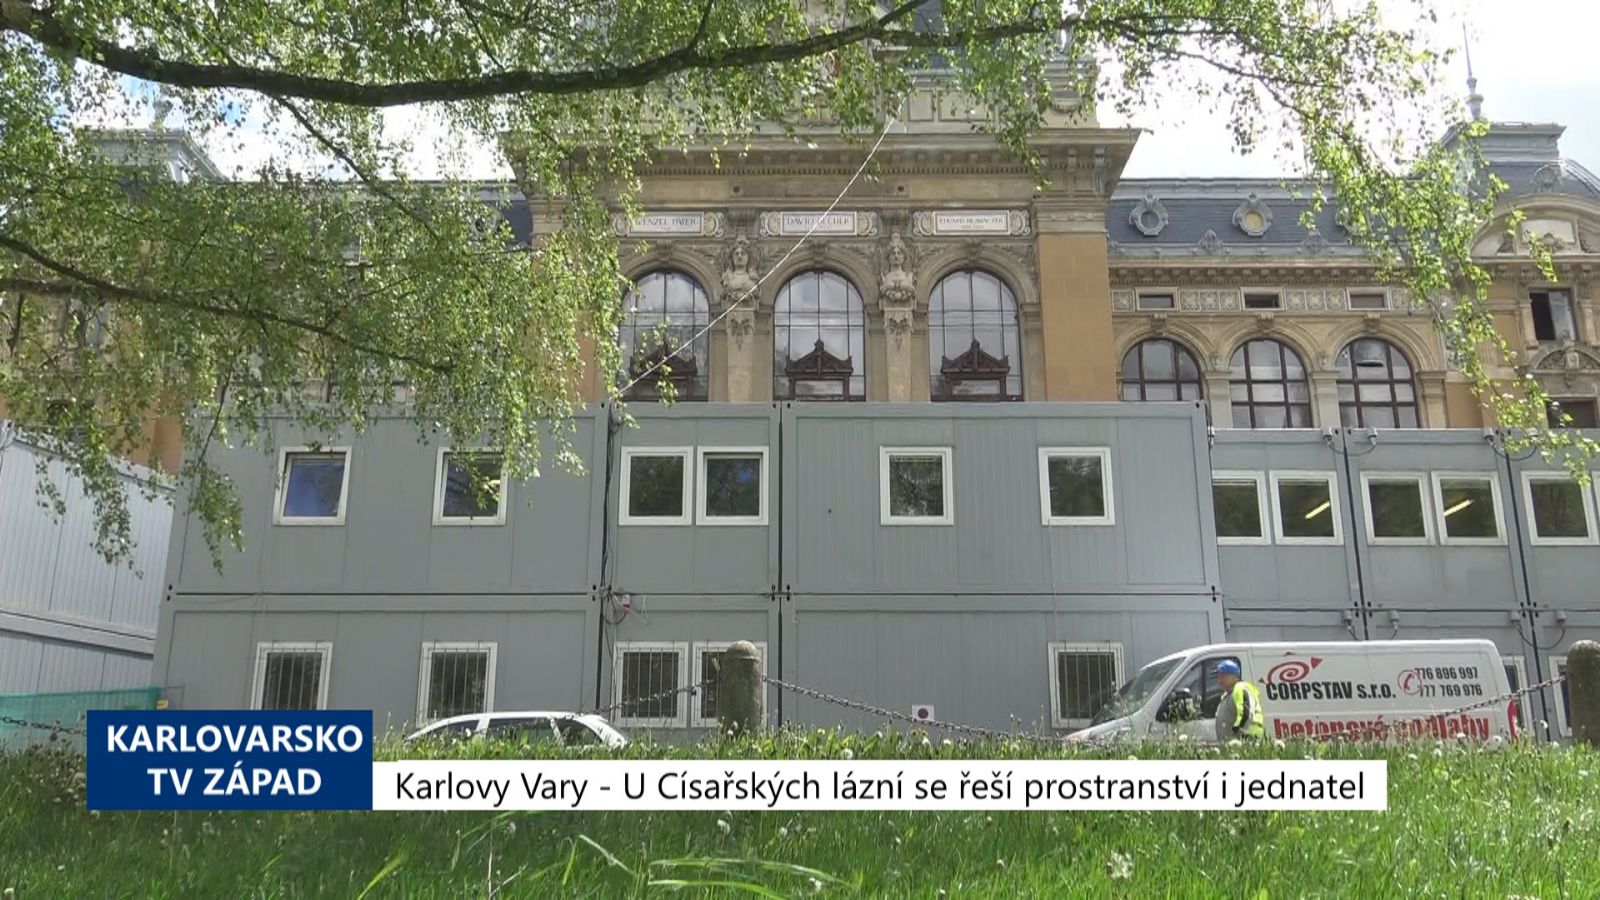 Karlovy Vary: U Císařských lázní se řeší prostranství i jednatel (TV Západ)